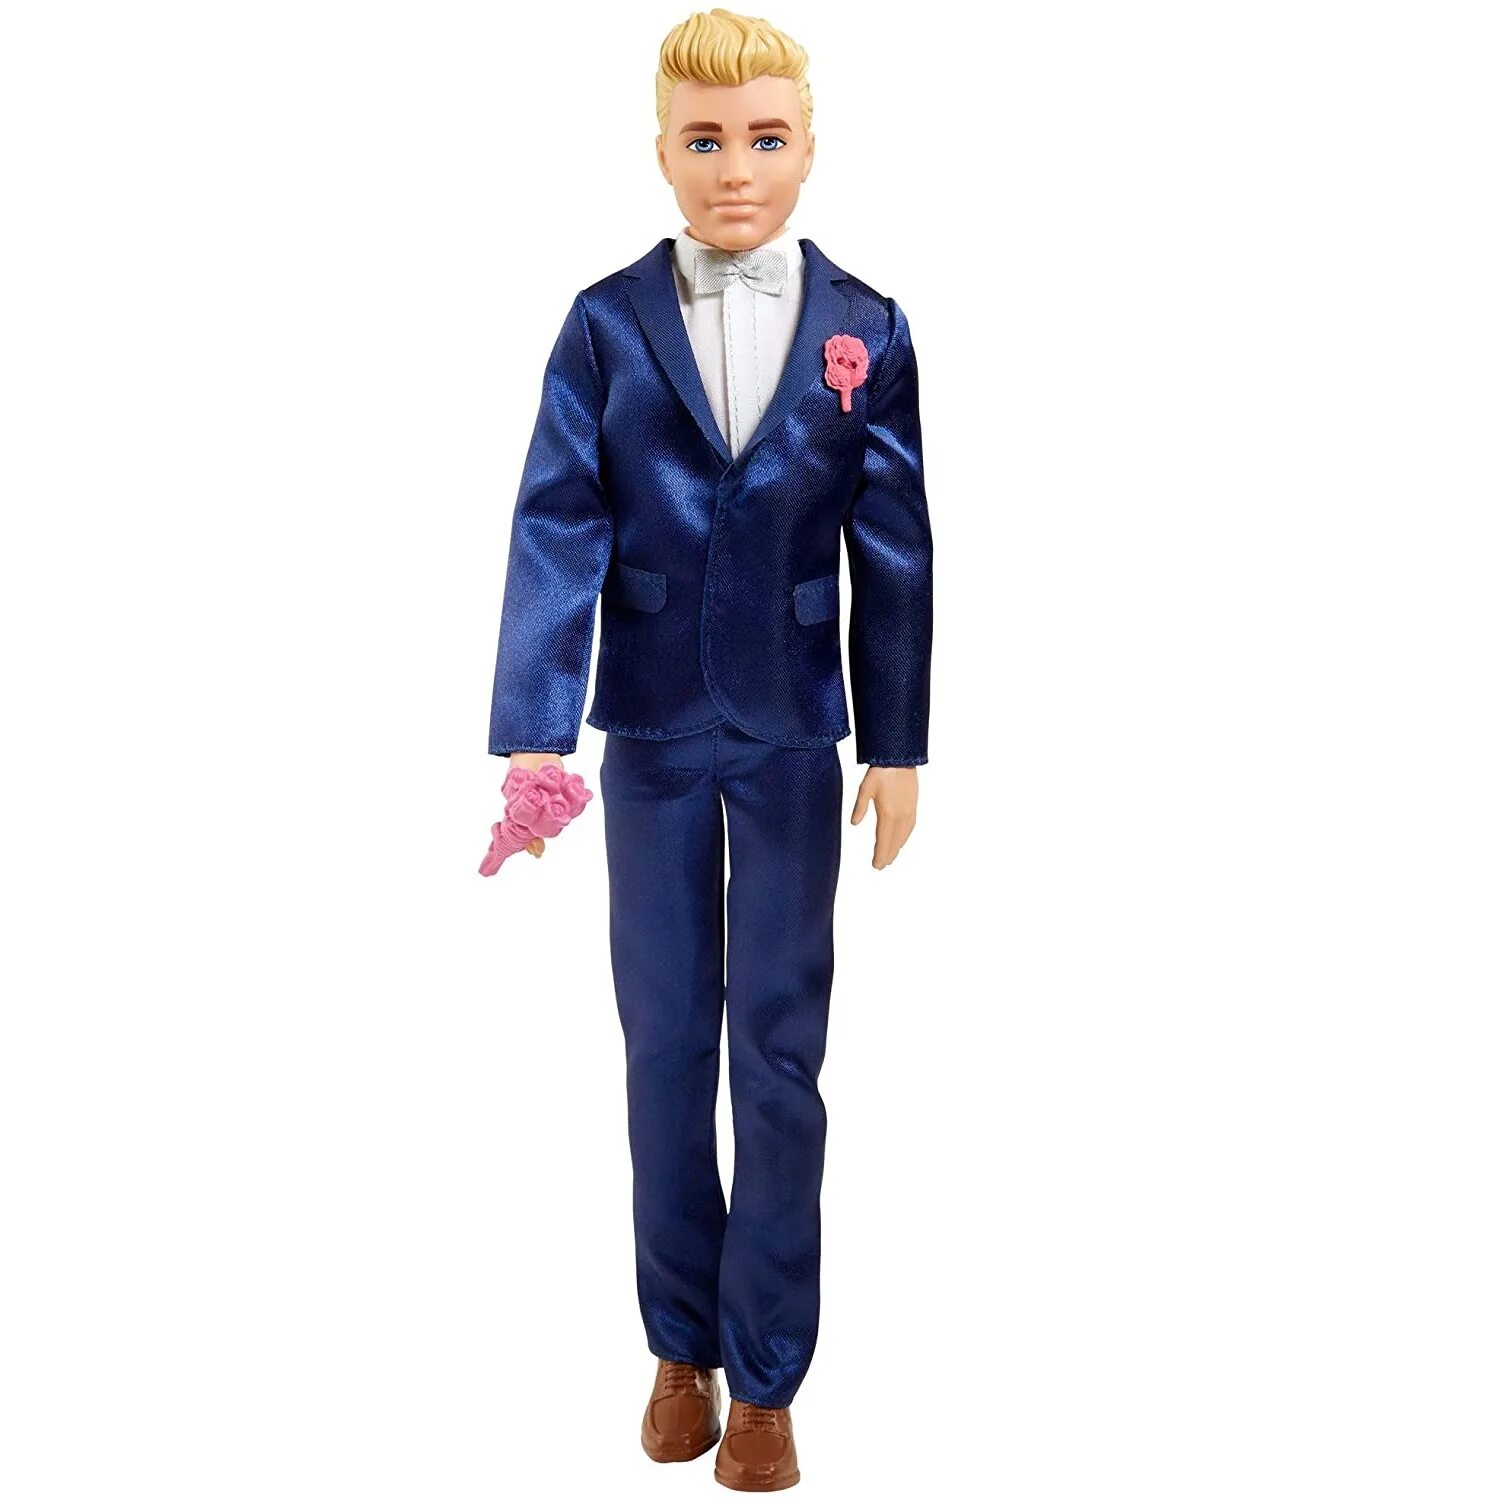 Кукла Кен жених. Куклы Барби и Кен. Кукла Барби Кен жених. Barbie Кен жених gtf36.